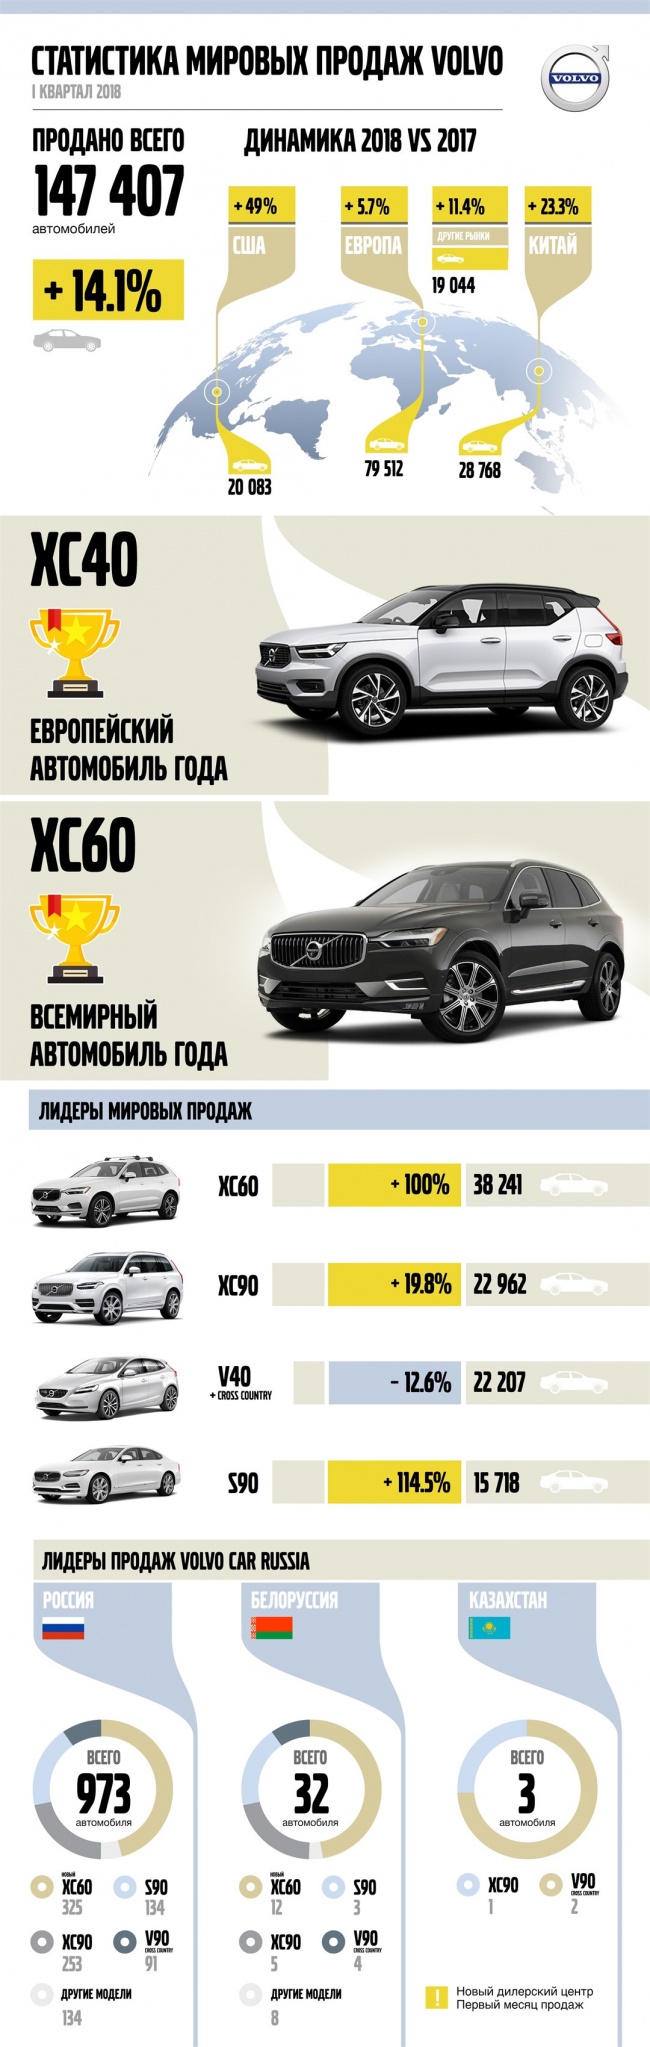 227525_В первом квартале_года уровень мировых продаж Volvo Cars поднялся на 141%.jpg